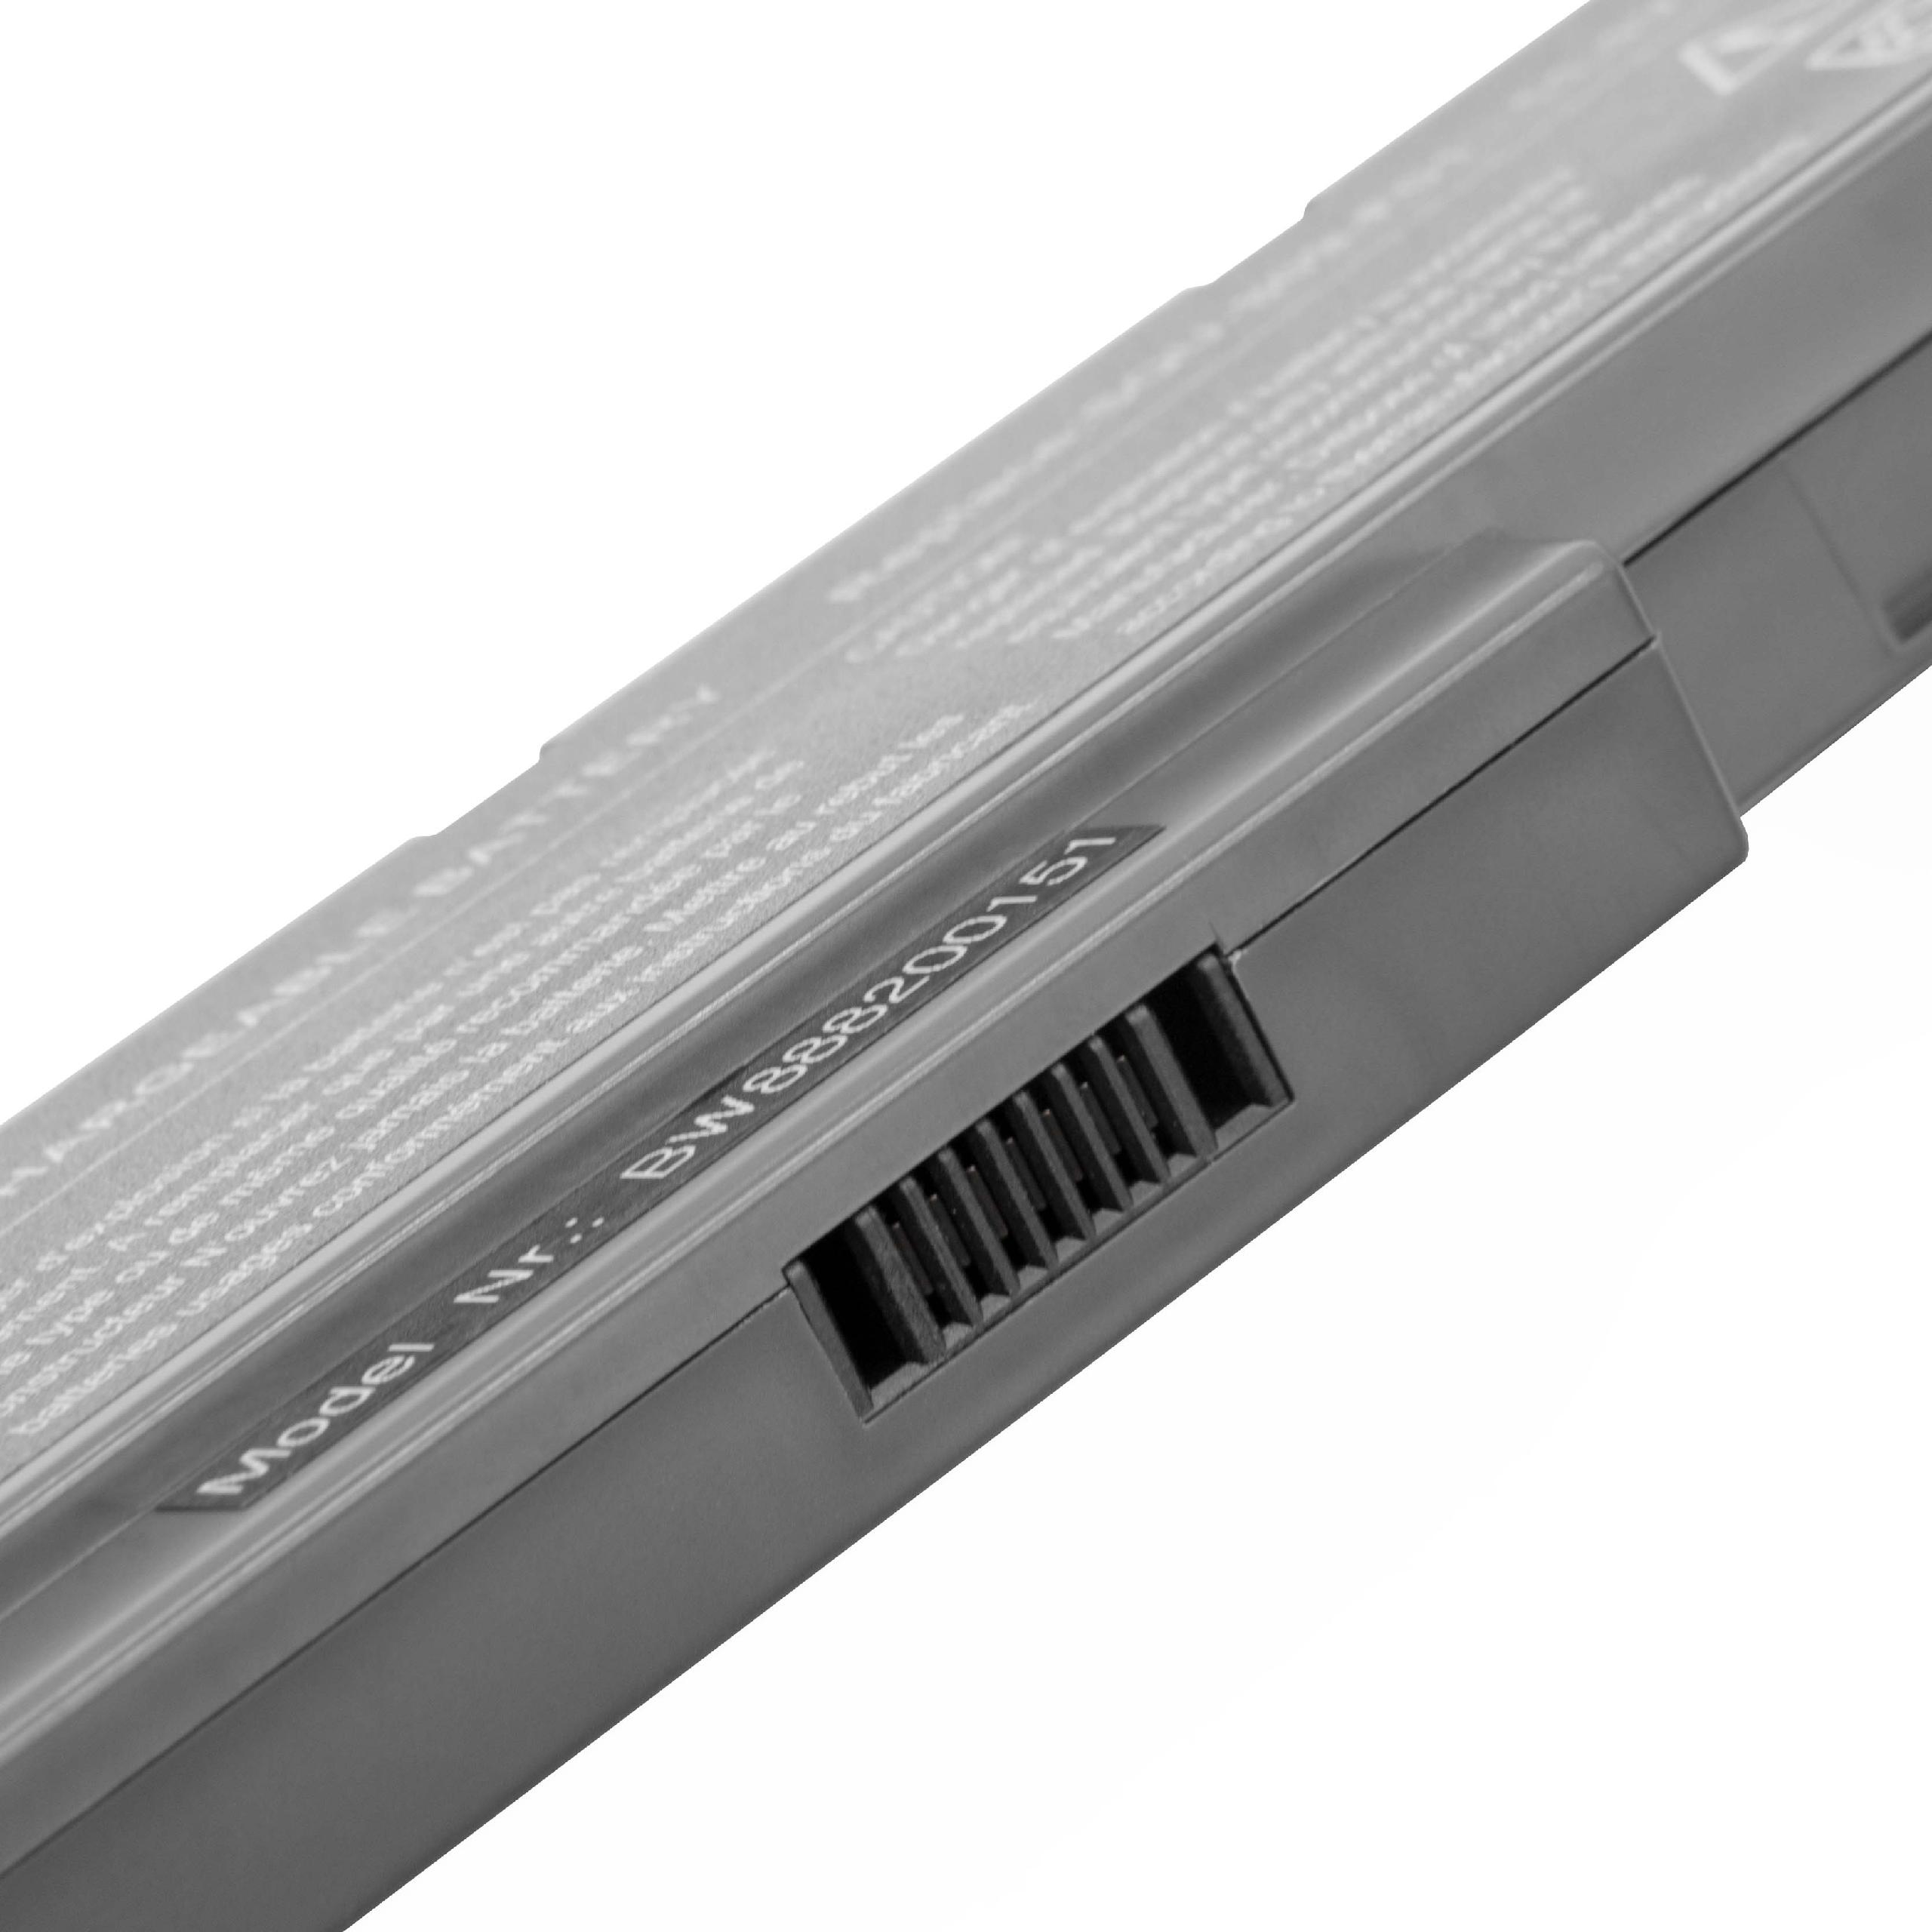 Batterie remplace Fujitsu Siemens SQU-808-F01 pour ordinateur portable - 5200mAh 11,1V Li-ion, noir